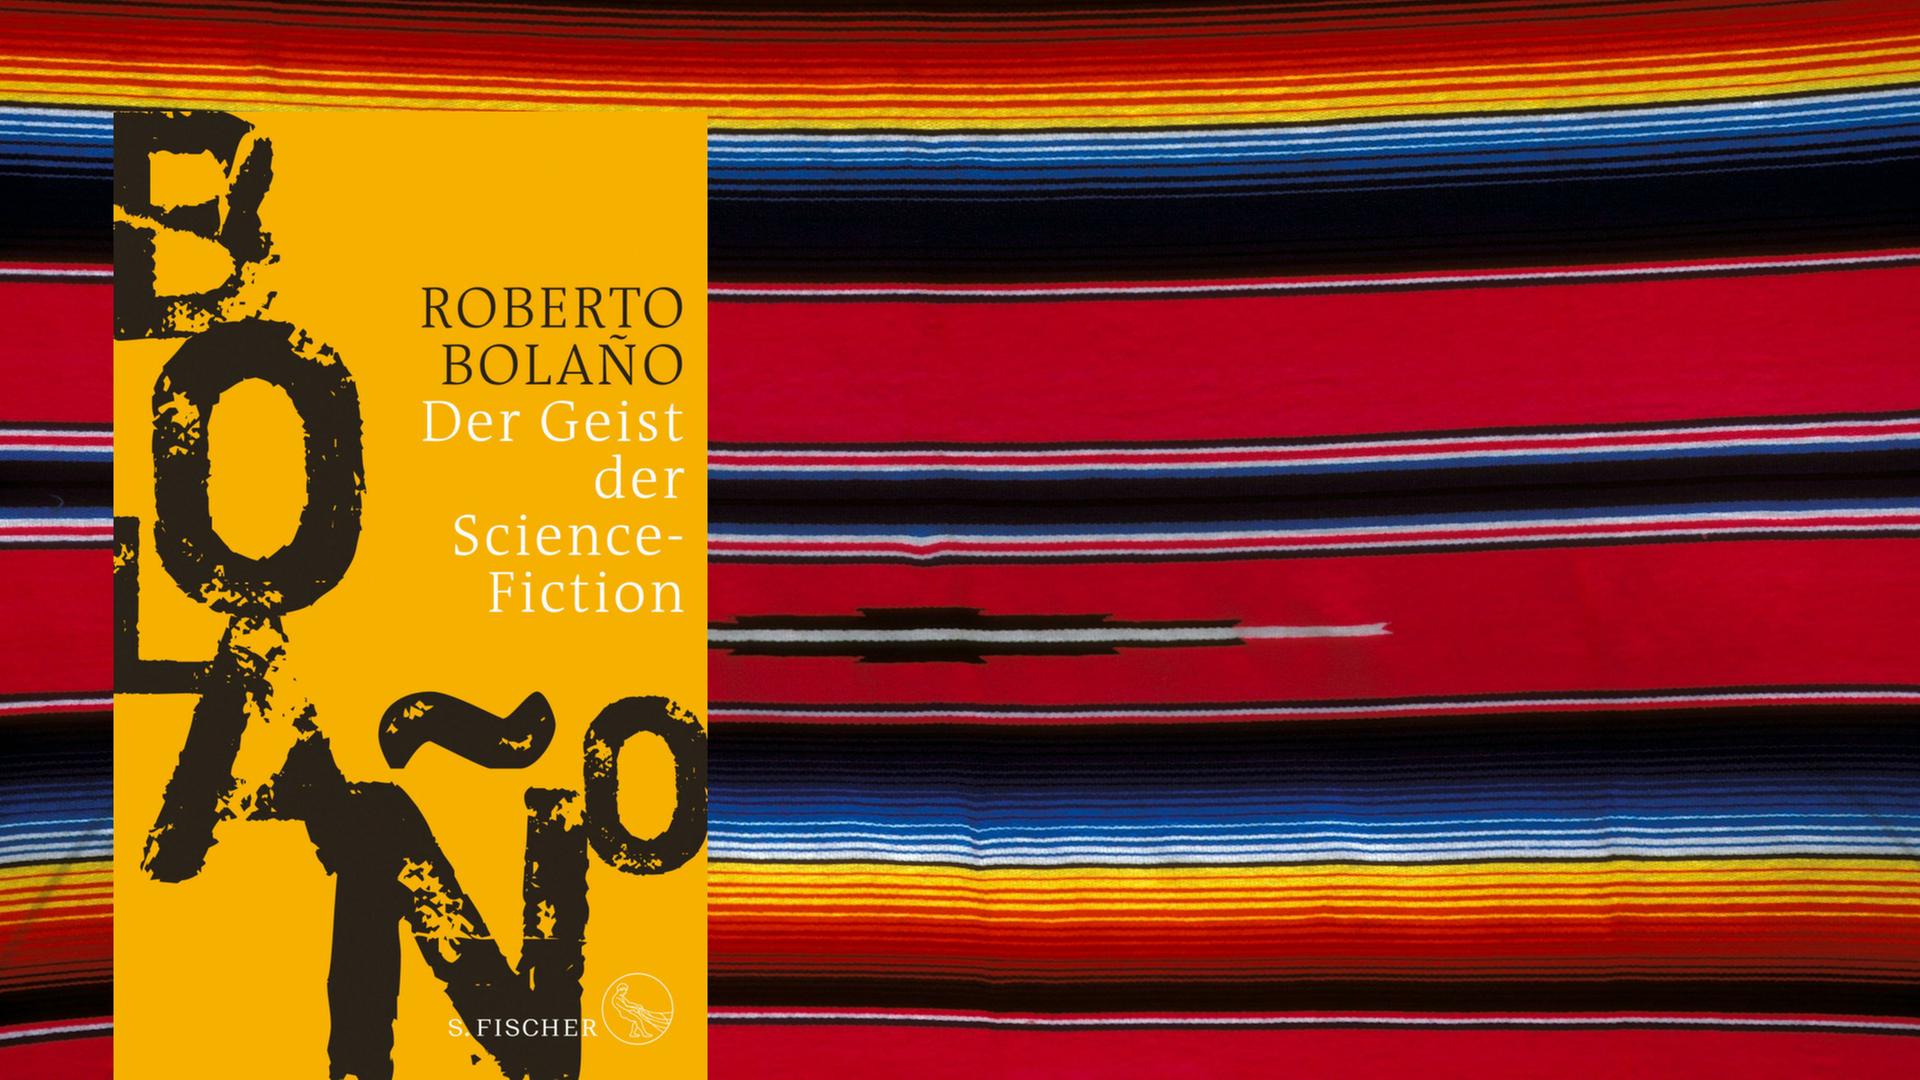 Buchcover: Roberto Bolaño: "Der Geist der Science-Fiction"